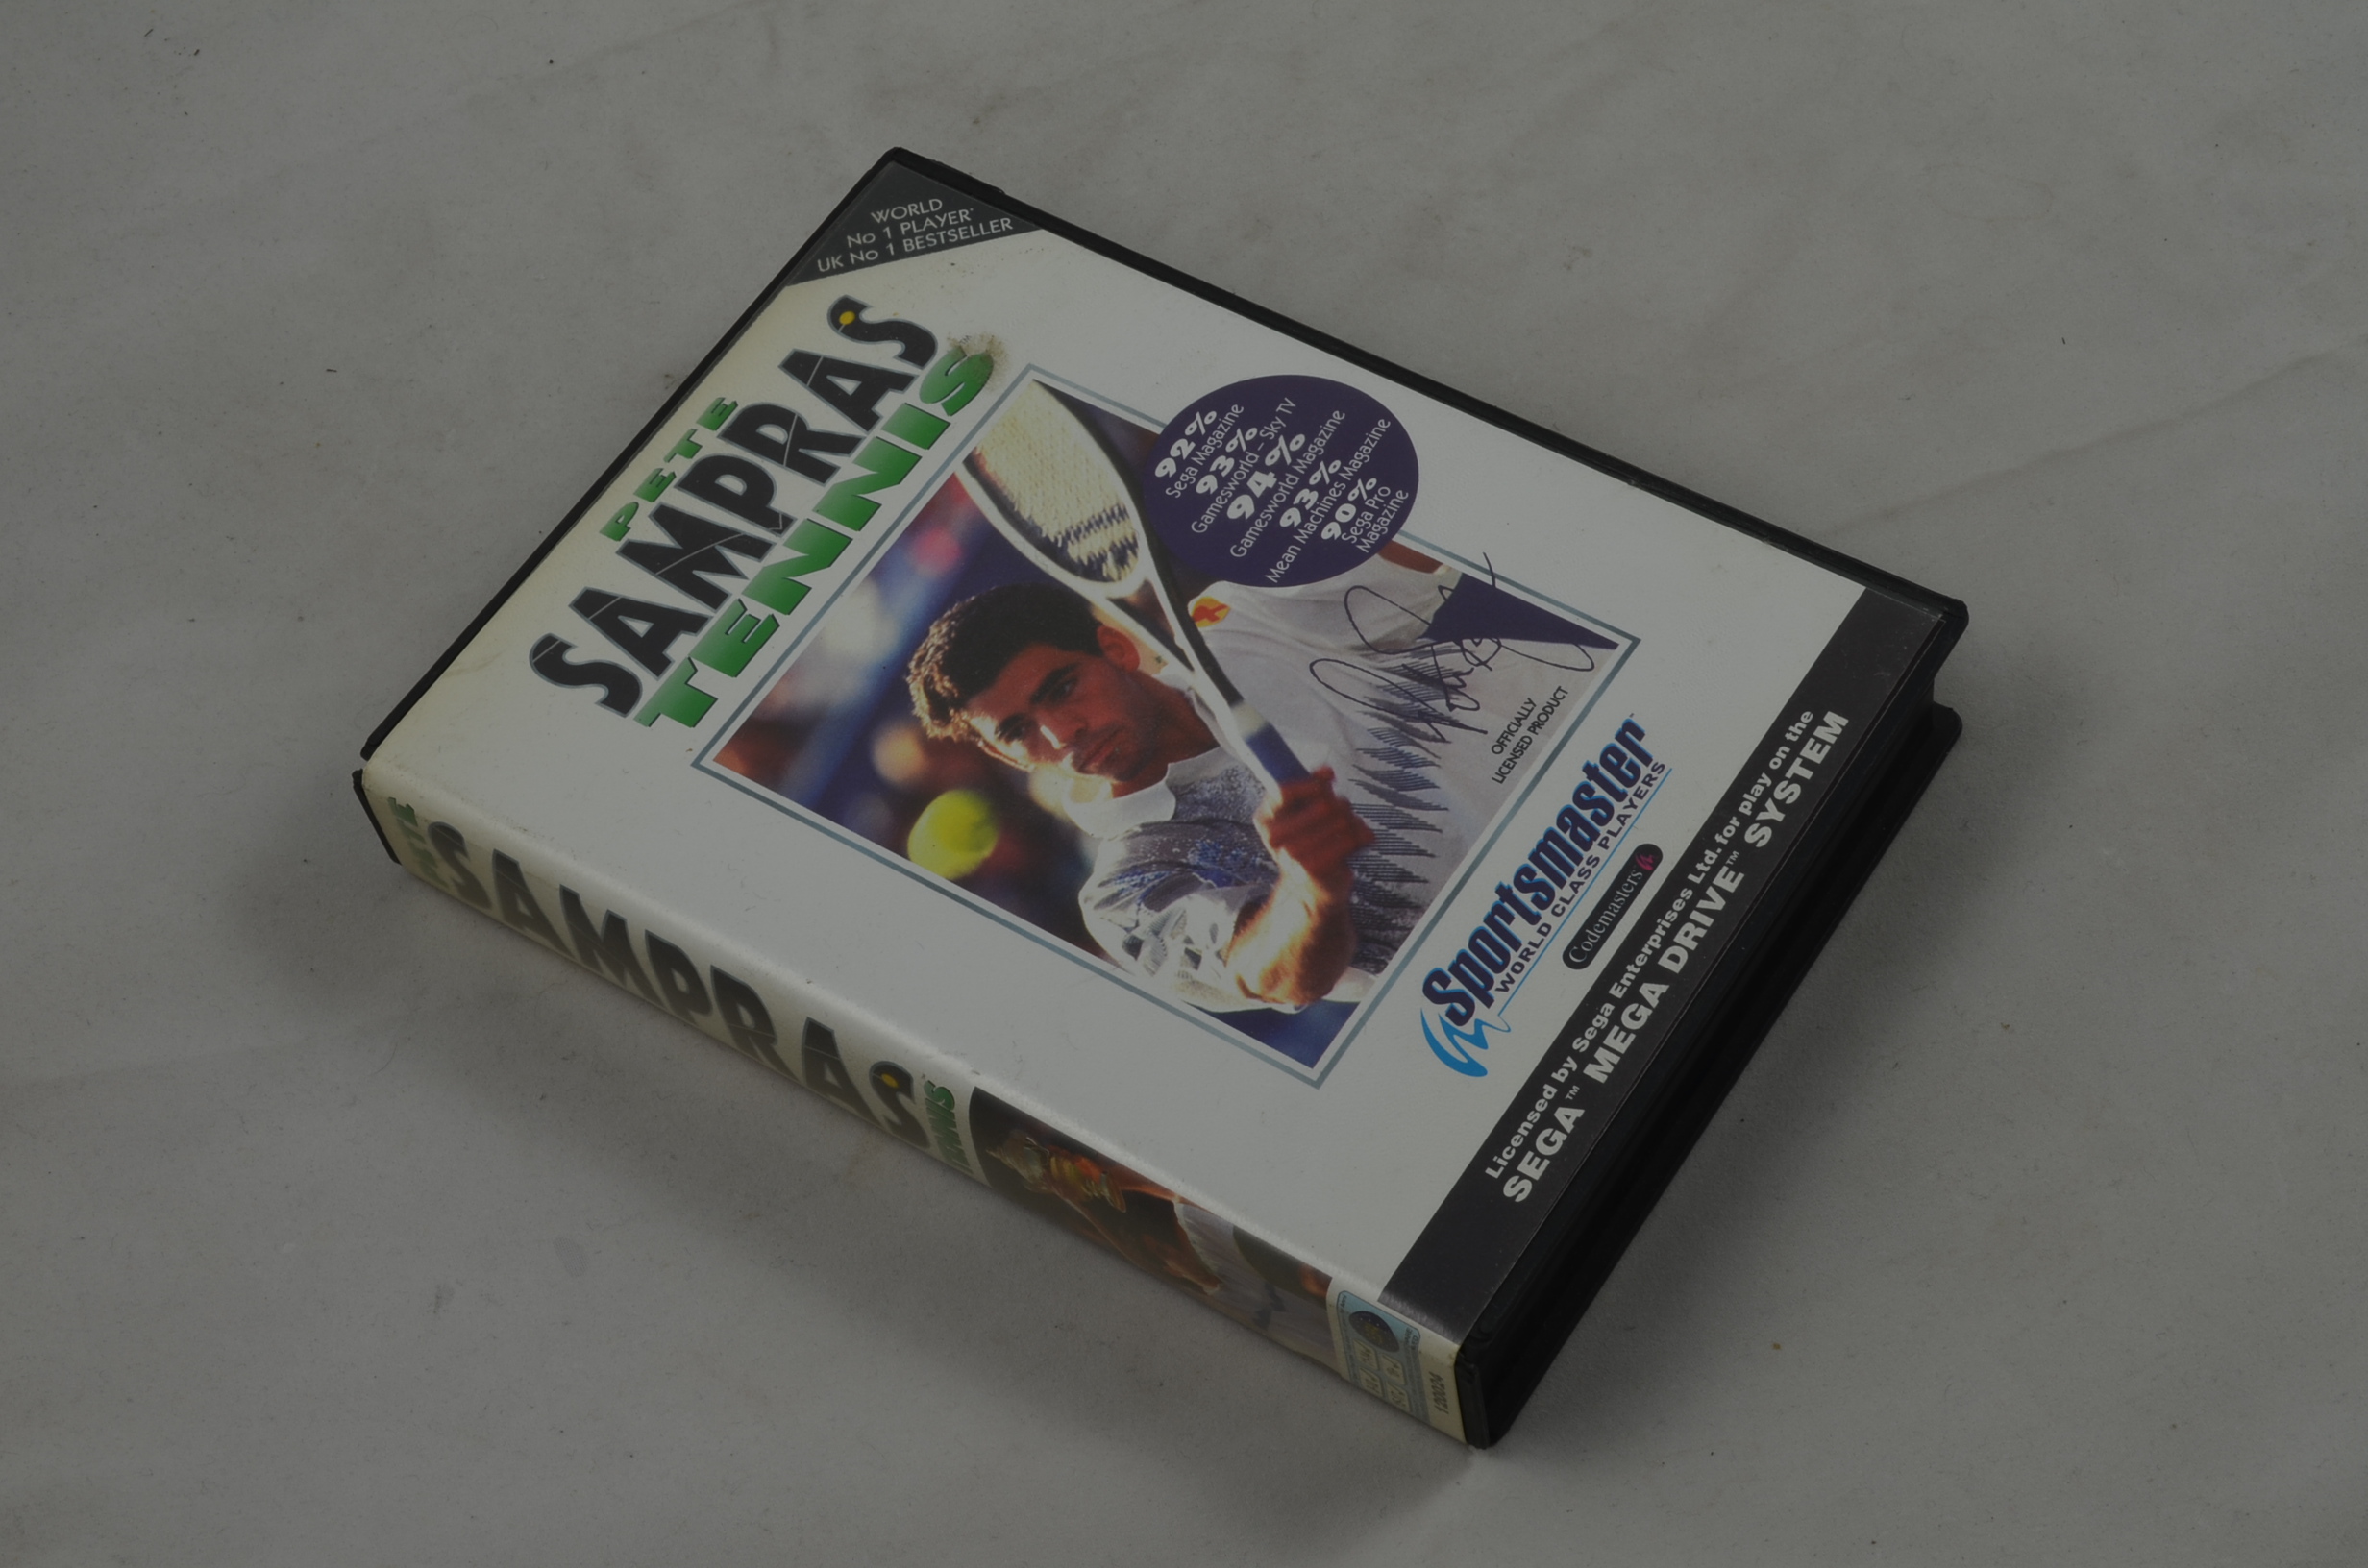 Produktbild von Pete Sampras Tennis Sega Mega Drive Spiel CIB (sehr gut)